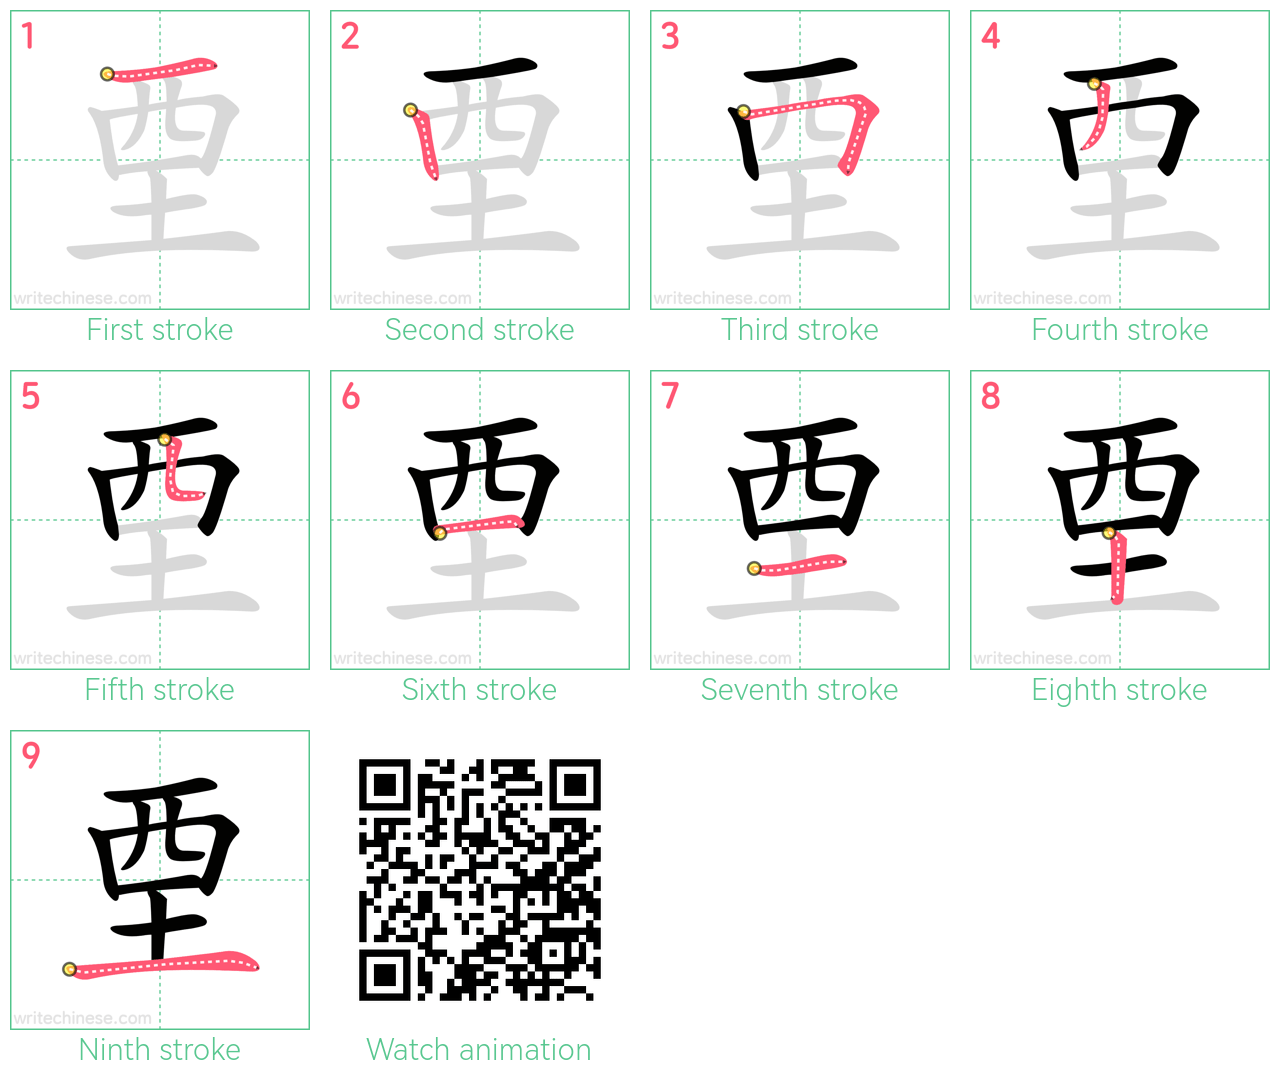 垔 step-by-step stroke order diagrams